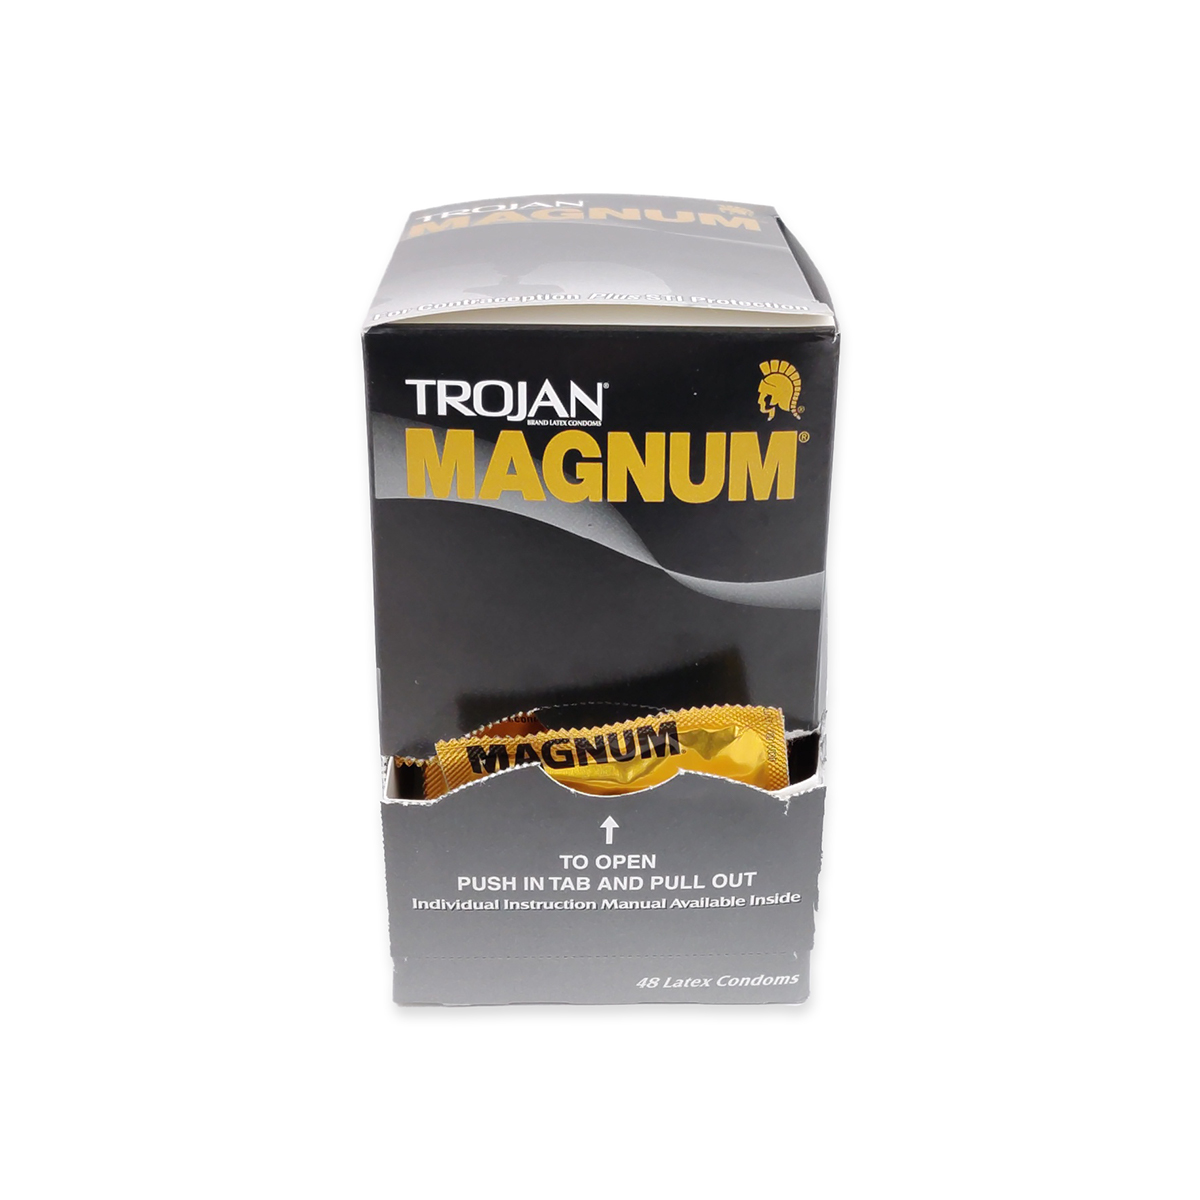 Trojan Magnum Condoms Box Of 48 Cd0018